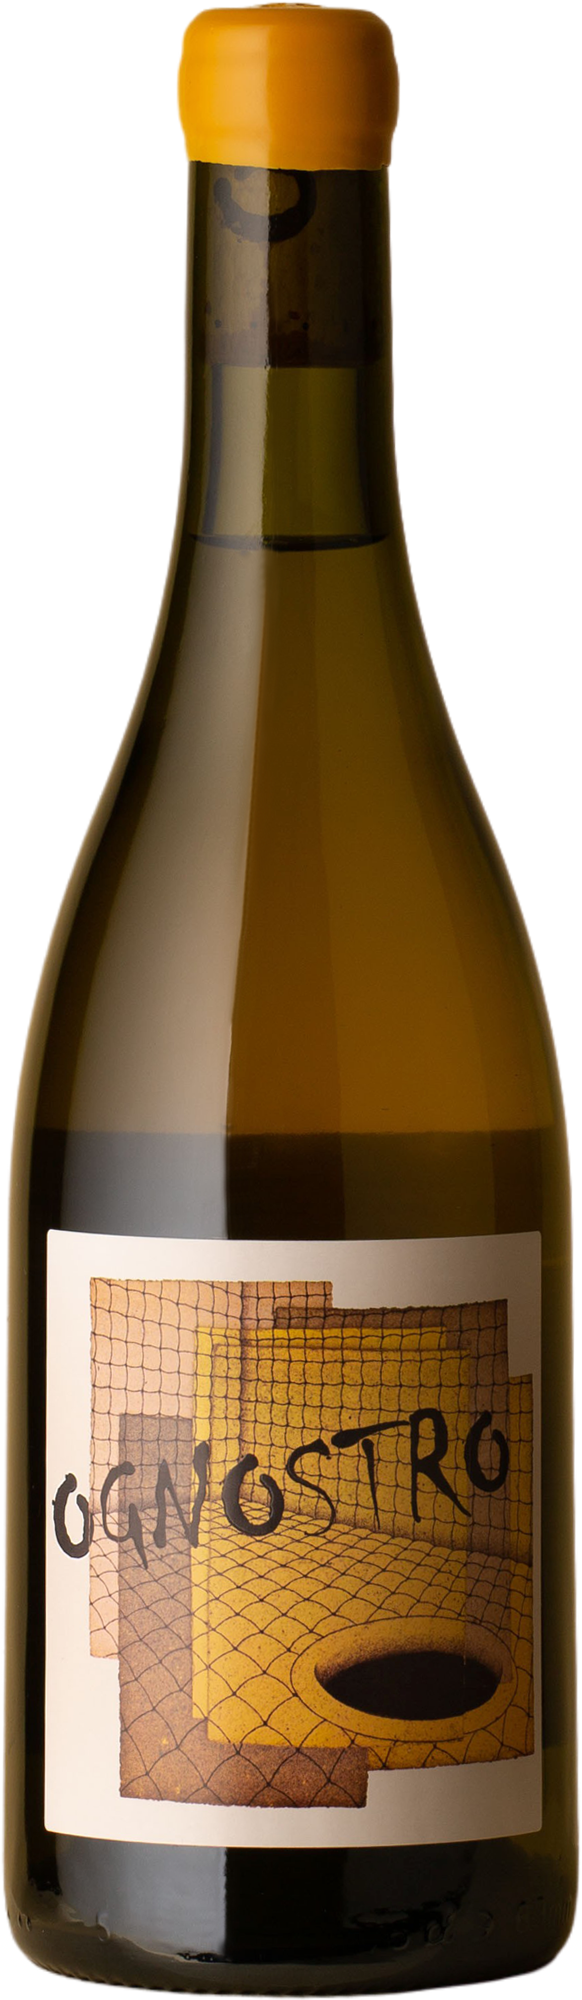 Ognostro - Bianco Fiano 2018 White Wine